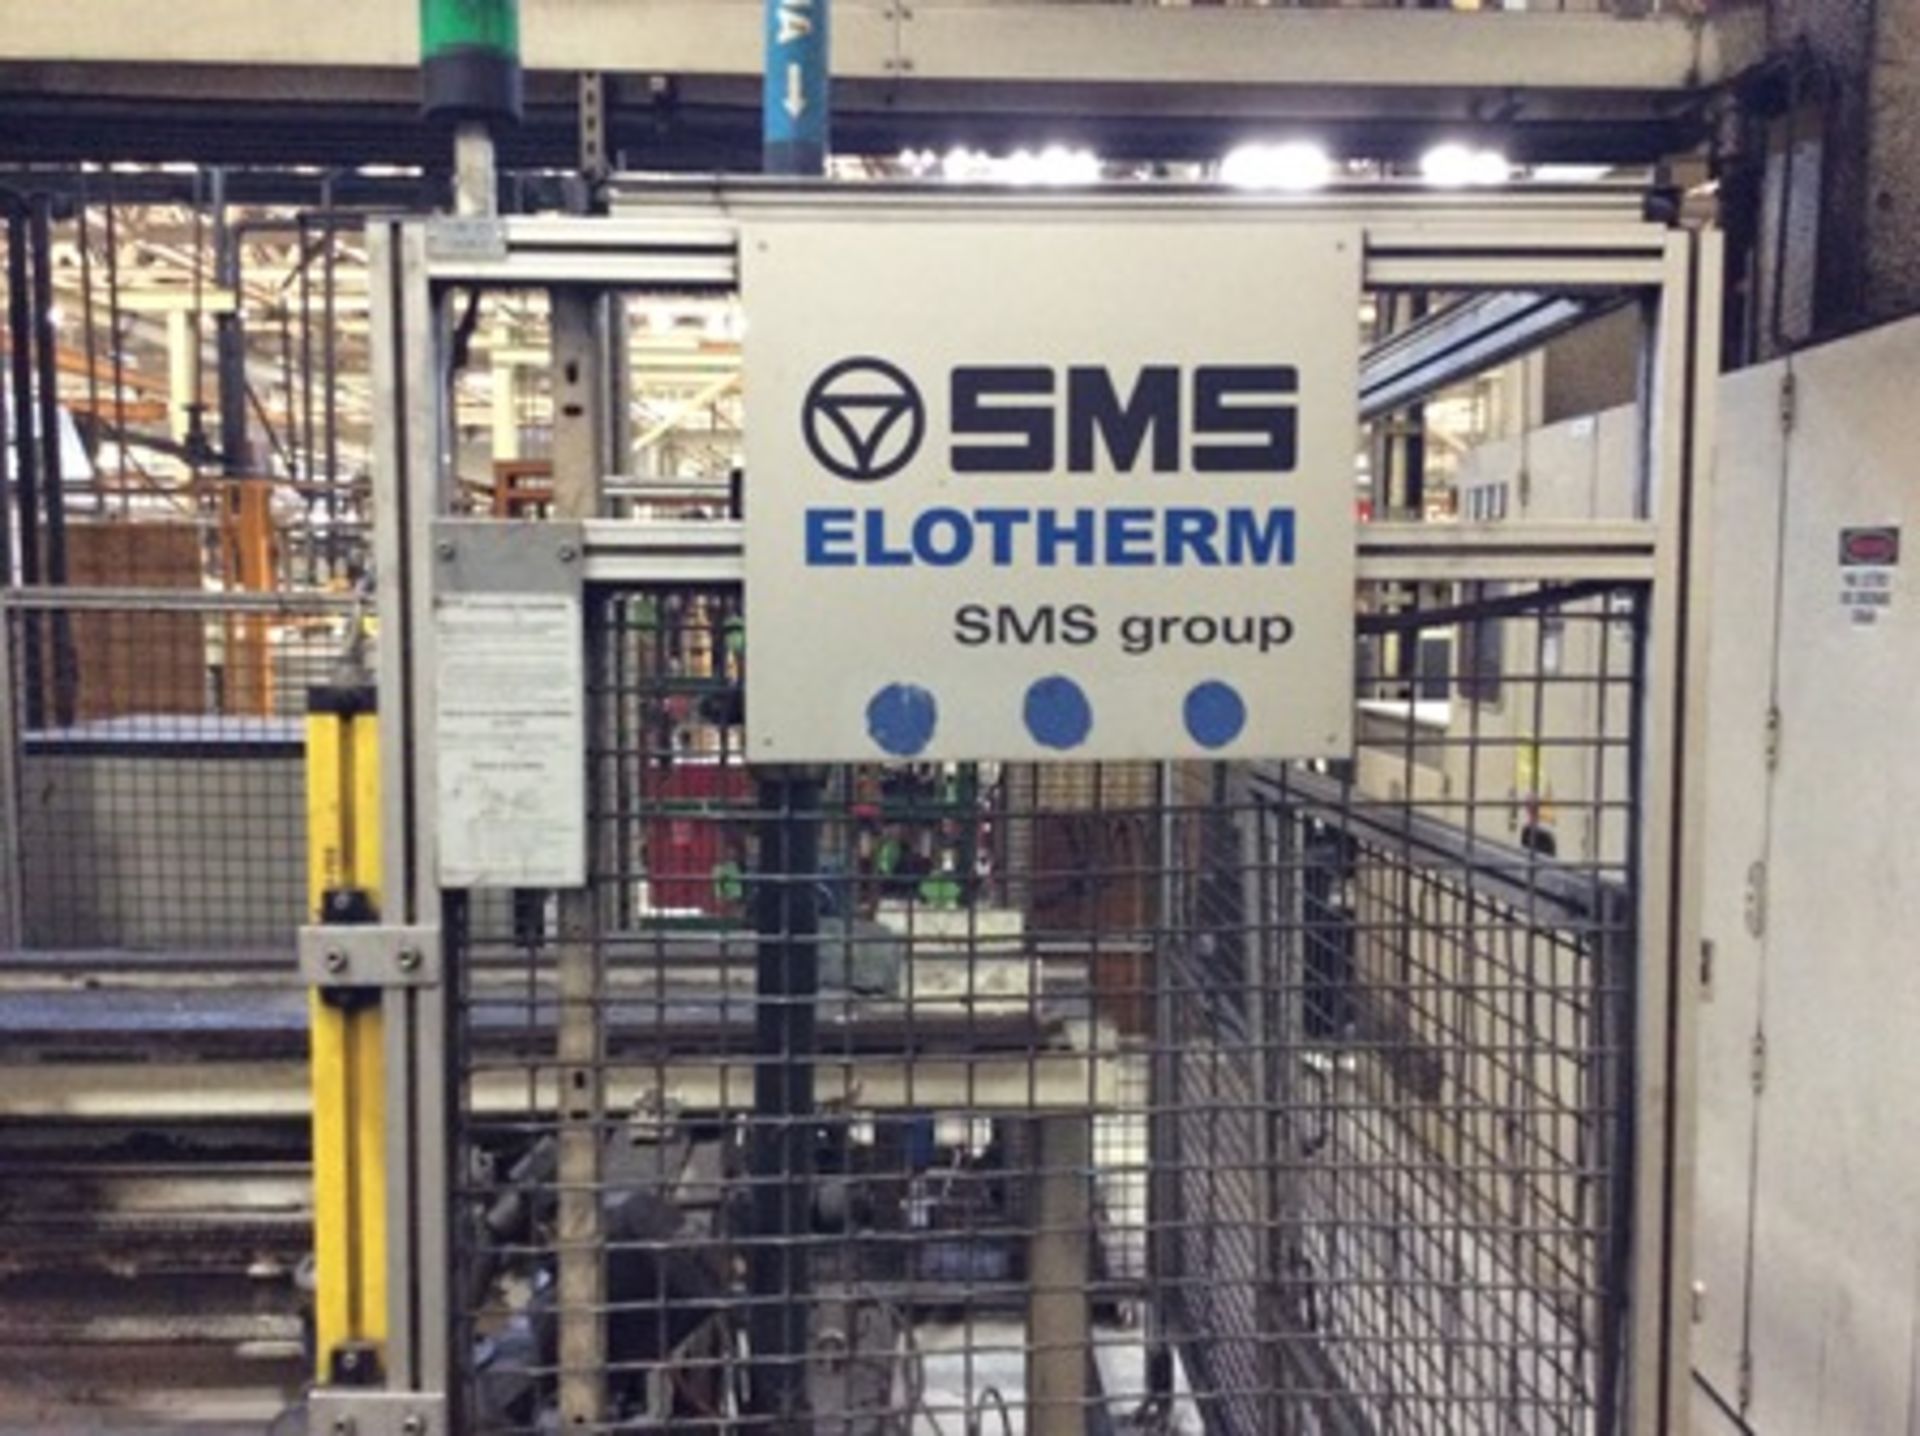 Maquina para tratamiento térmico por inducción marca SMS Elotherm modelo KWH 1500/240 serie 401.182 - Image 15 of 31